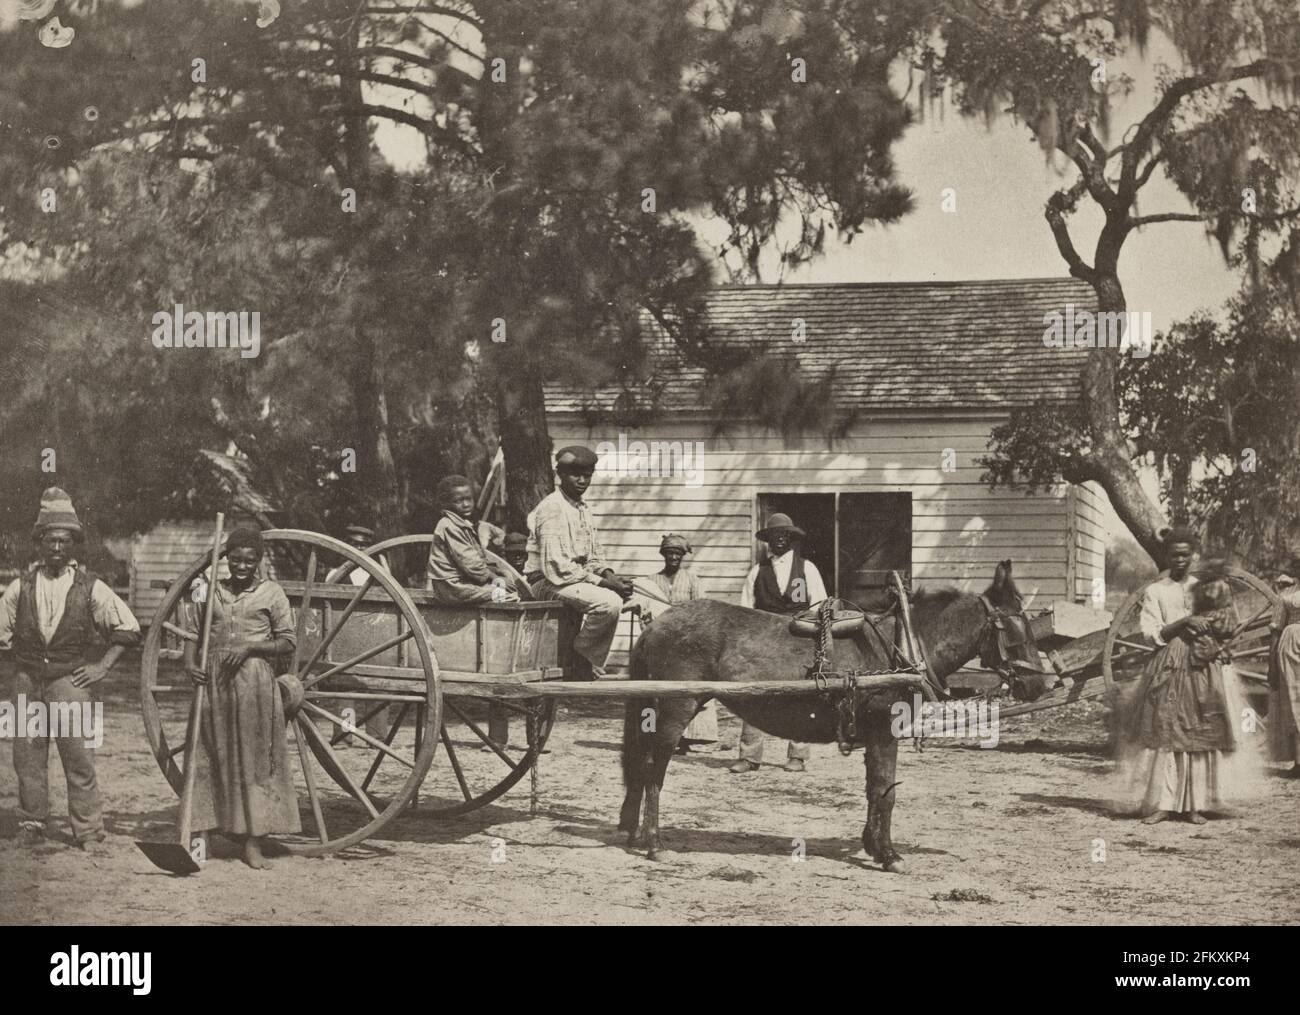 Esclavos negros 1862 Isla Edisto, S.C. (plantación de James Hopkinson) - La foto muestra un grupo de esclavos afroamericanos posados alrededor de un carro tirado por caballos, con un edificio en el fondo, en la plantación Cassina Point de James Hopkinson en la Isla Edisto, Carolina del Sur Foto de stock